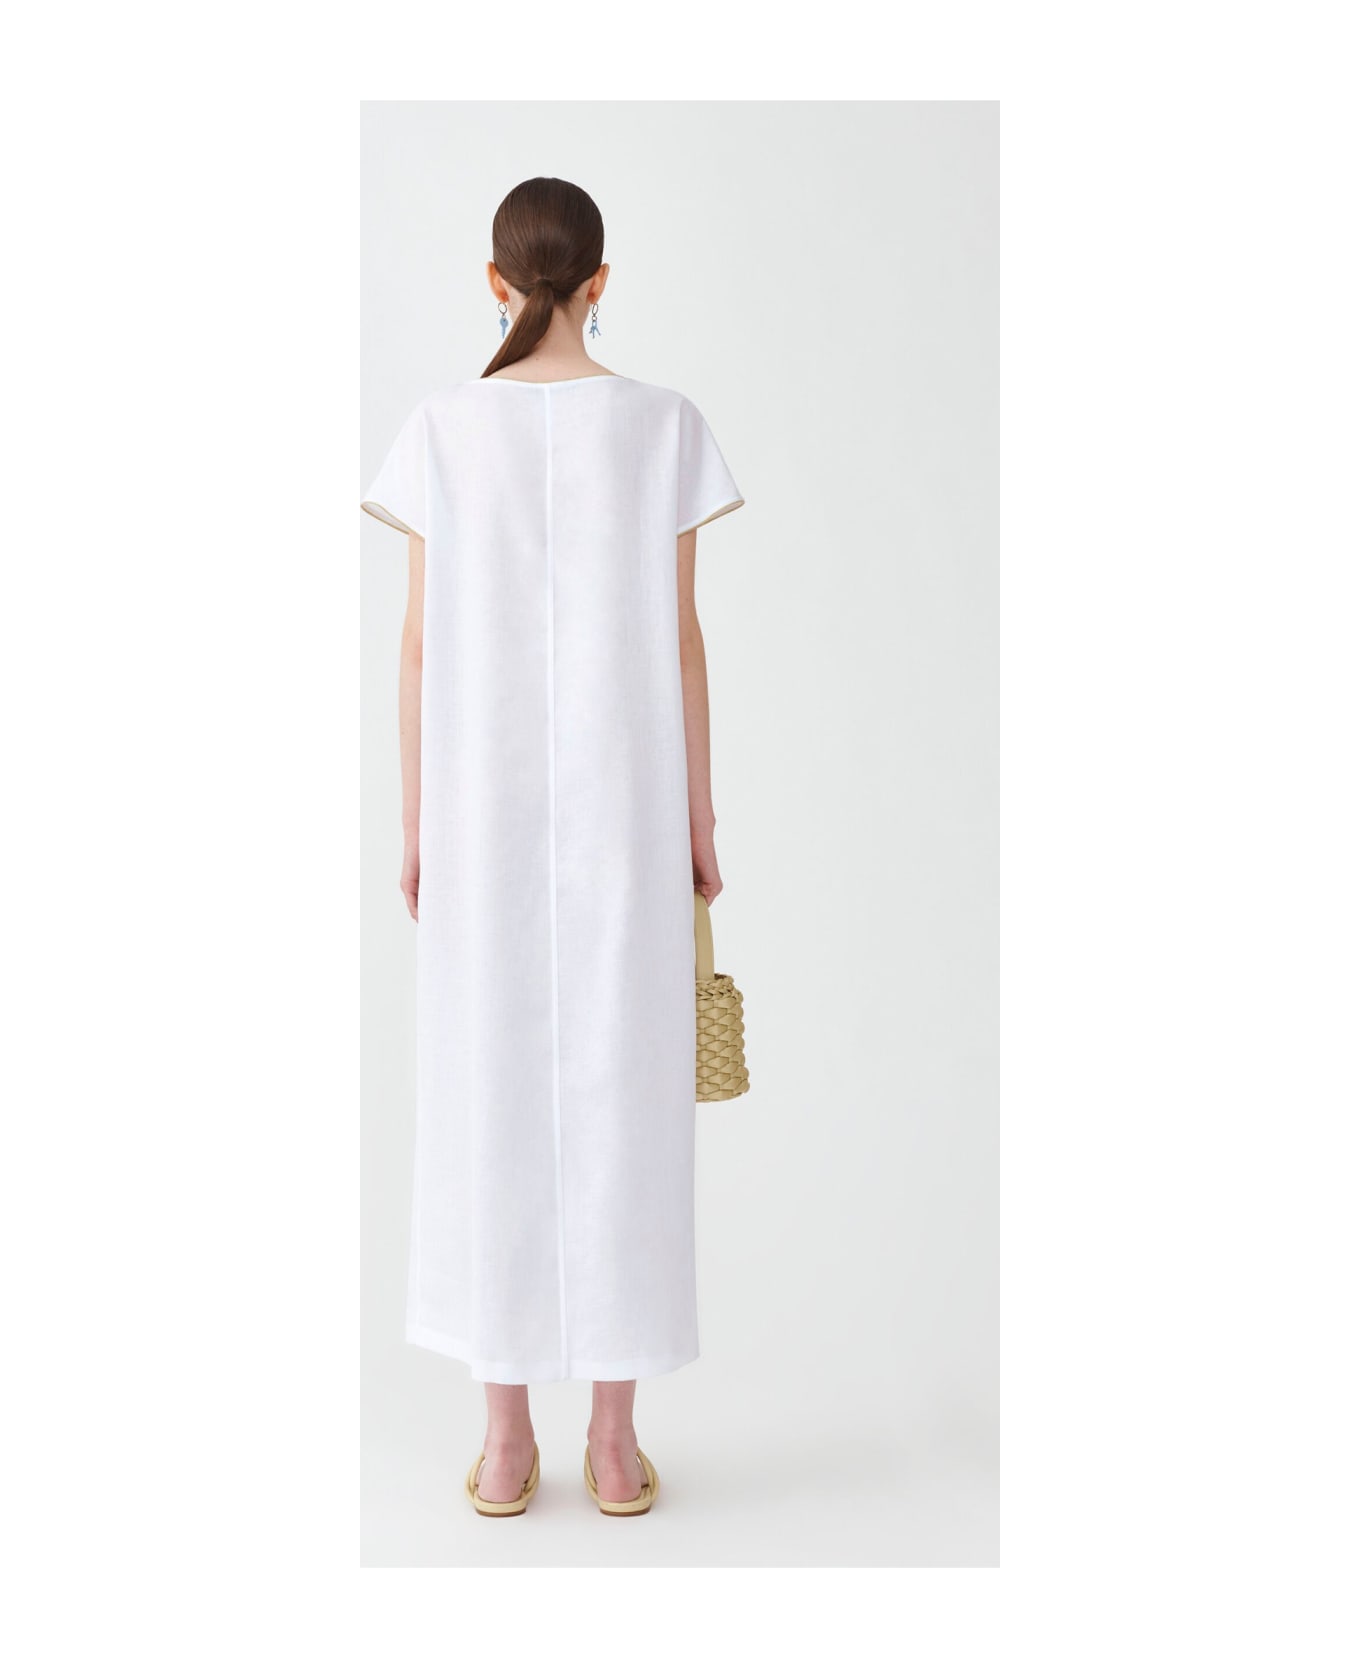 Fabiana Filippi White Linen Dress - BIANCO OTTICO